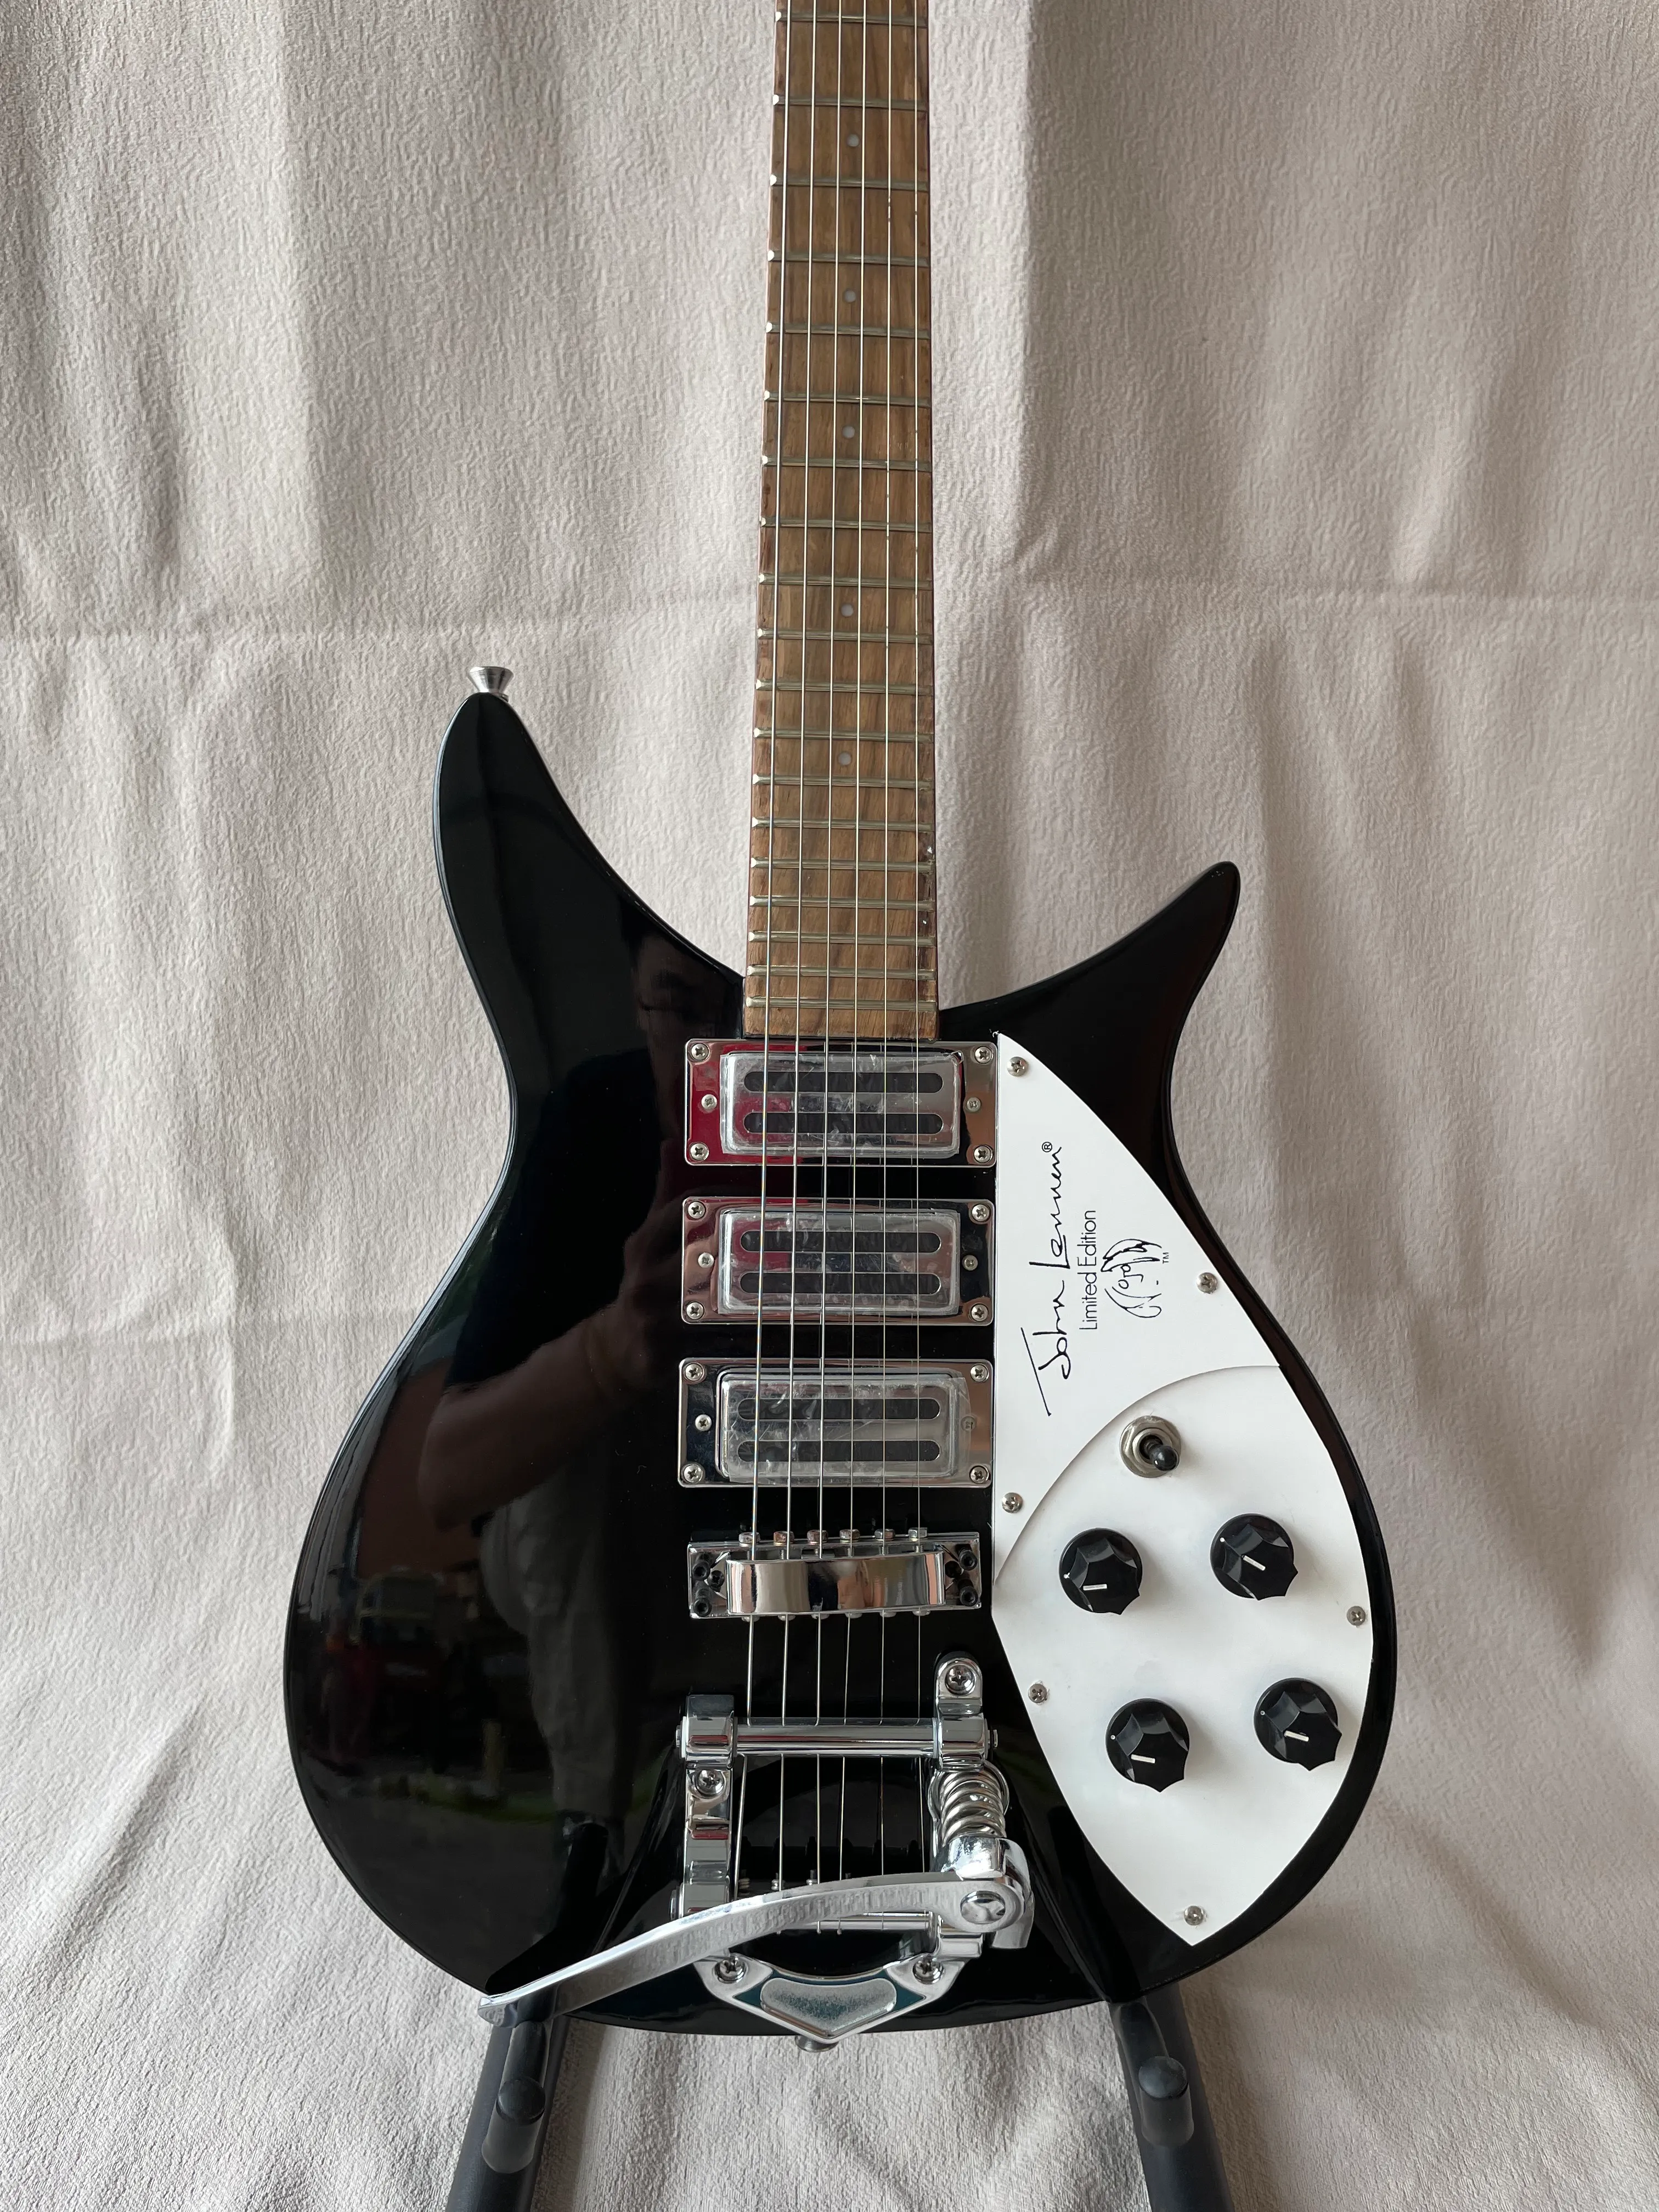 325 E-Gitarre mit Super-Tremolo-System-Brücke, metallische schwarze Farbe, hochwertige Gitarre, kostenloser Versand